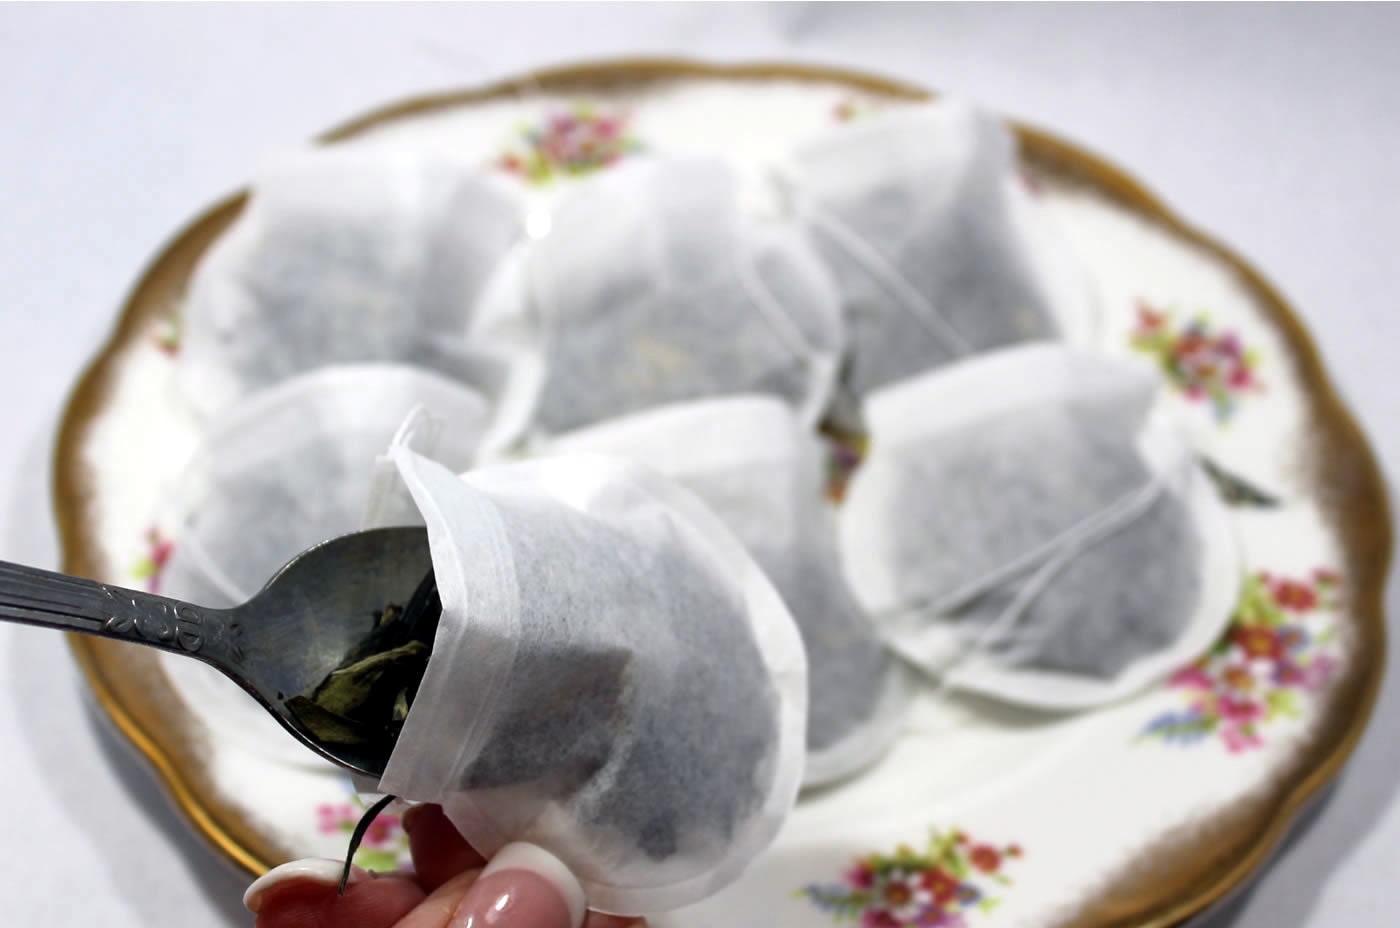 Filtre à thé en papier fin avec cordon de serrage compostable x 50